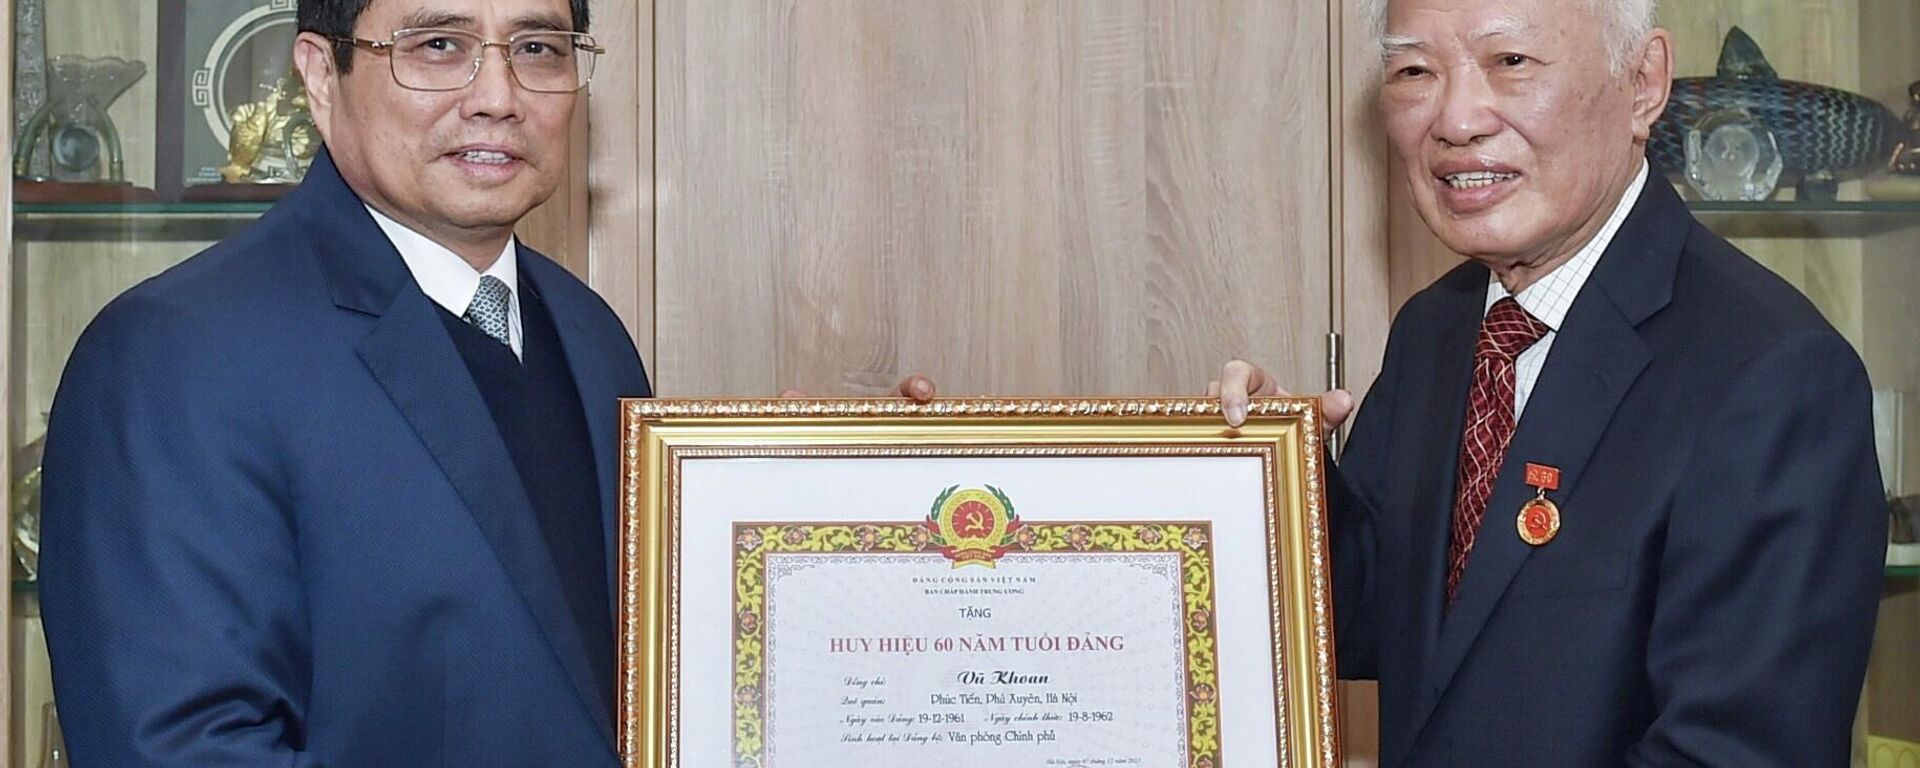 Thủ tướng Phạm Minh Chính trao Huy hiệu 60 năm tuổi Đảng cho nguyên Phó Thủ tướng Vũ Khoan - Sputnik Việt Nam, 1920, 18.11.2021